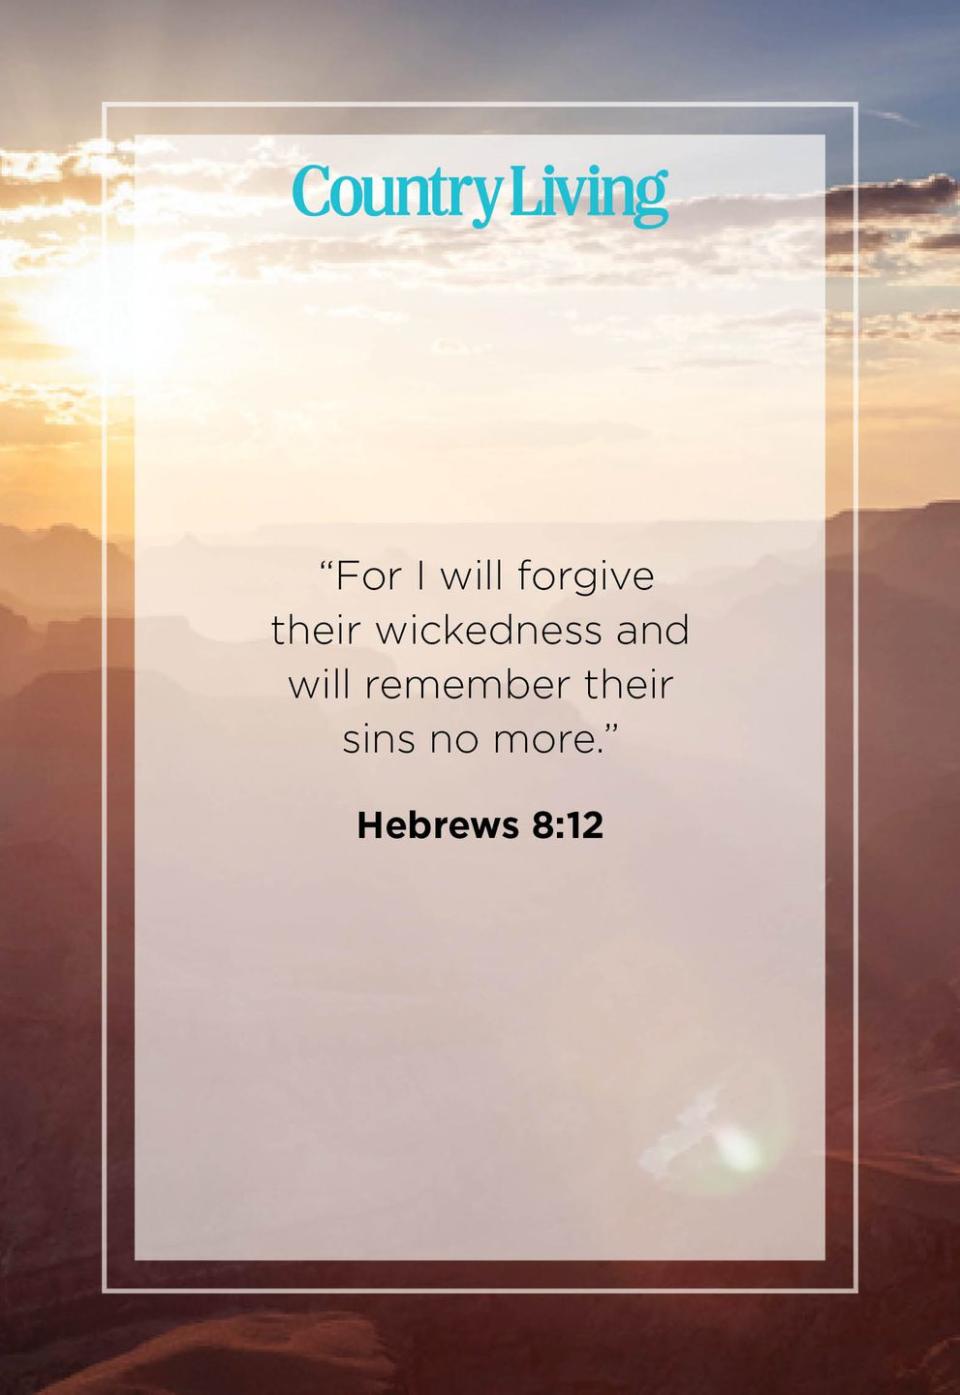 11) Hebrews 8:12